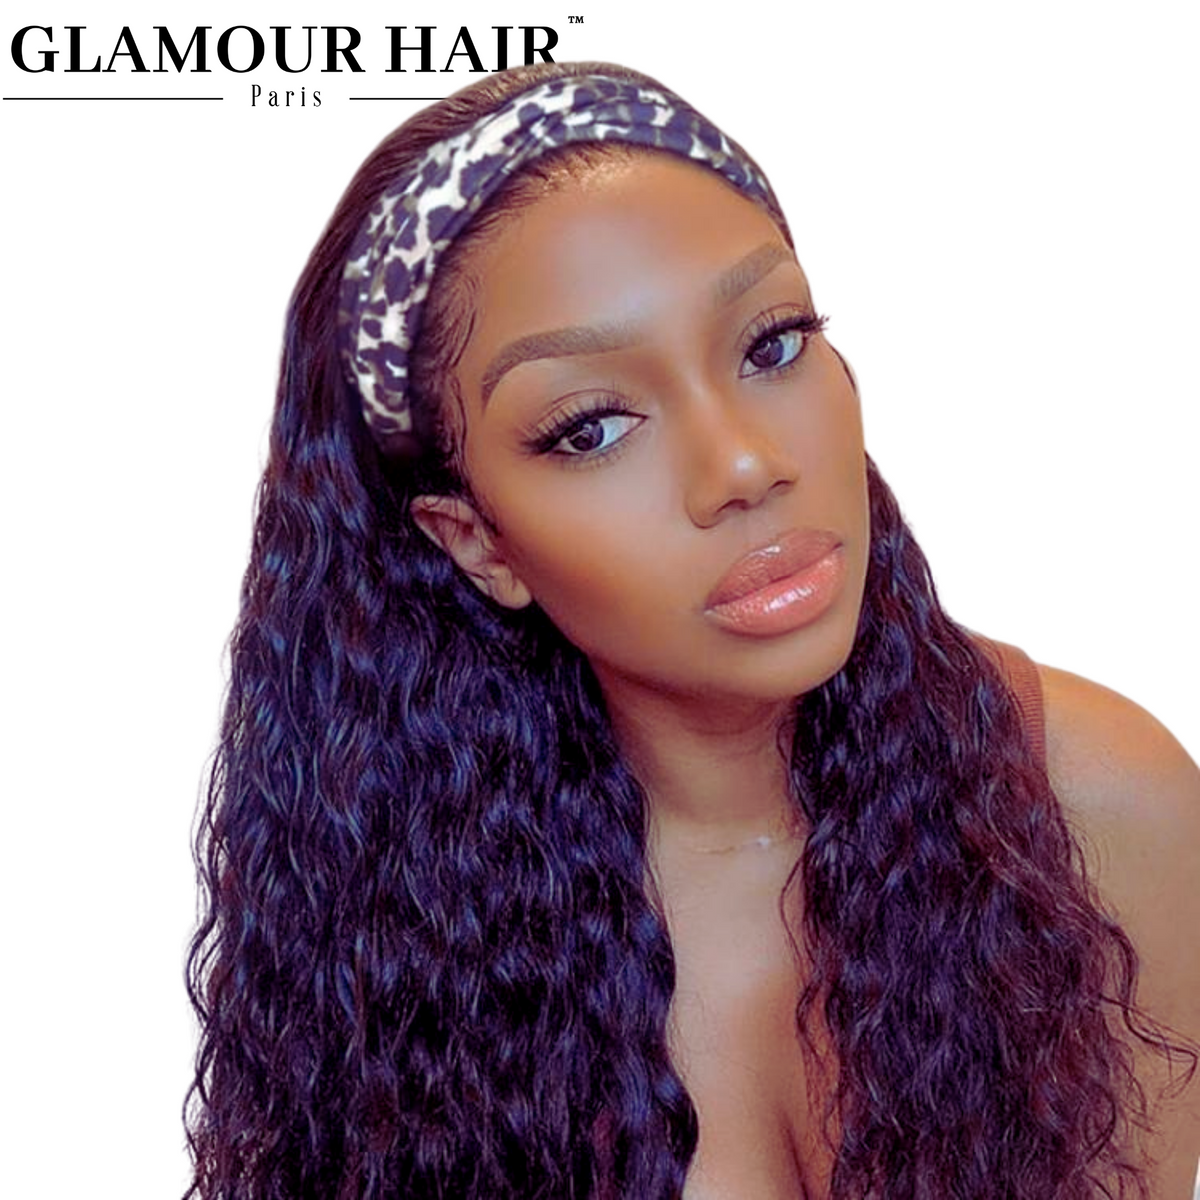 PERRUQUE BANDEAU AFRO LISSE – Glamour hair paris